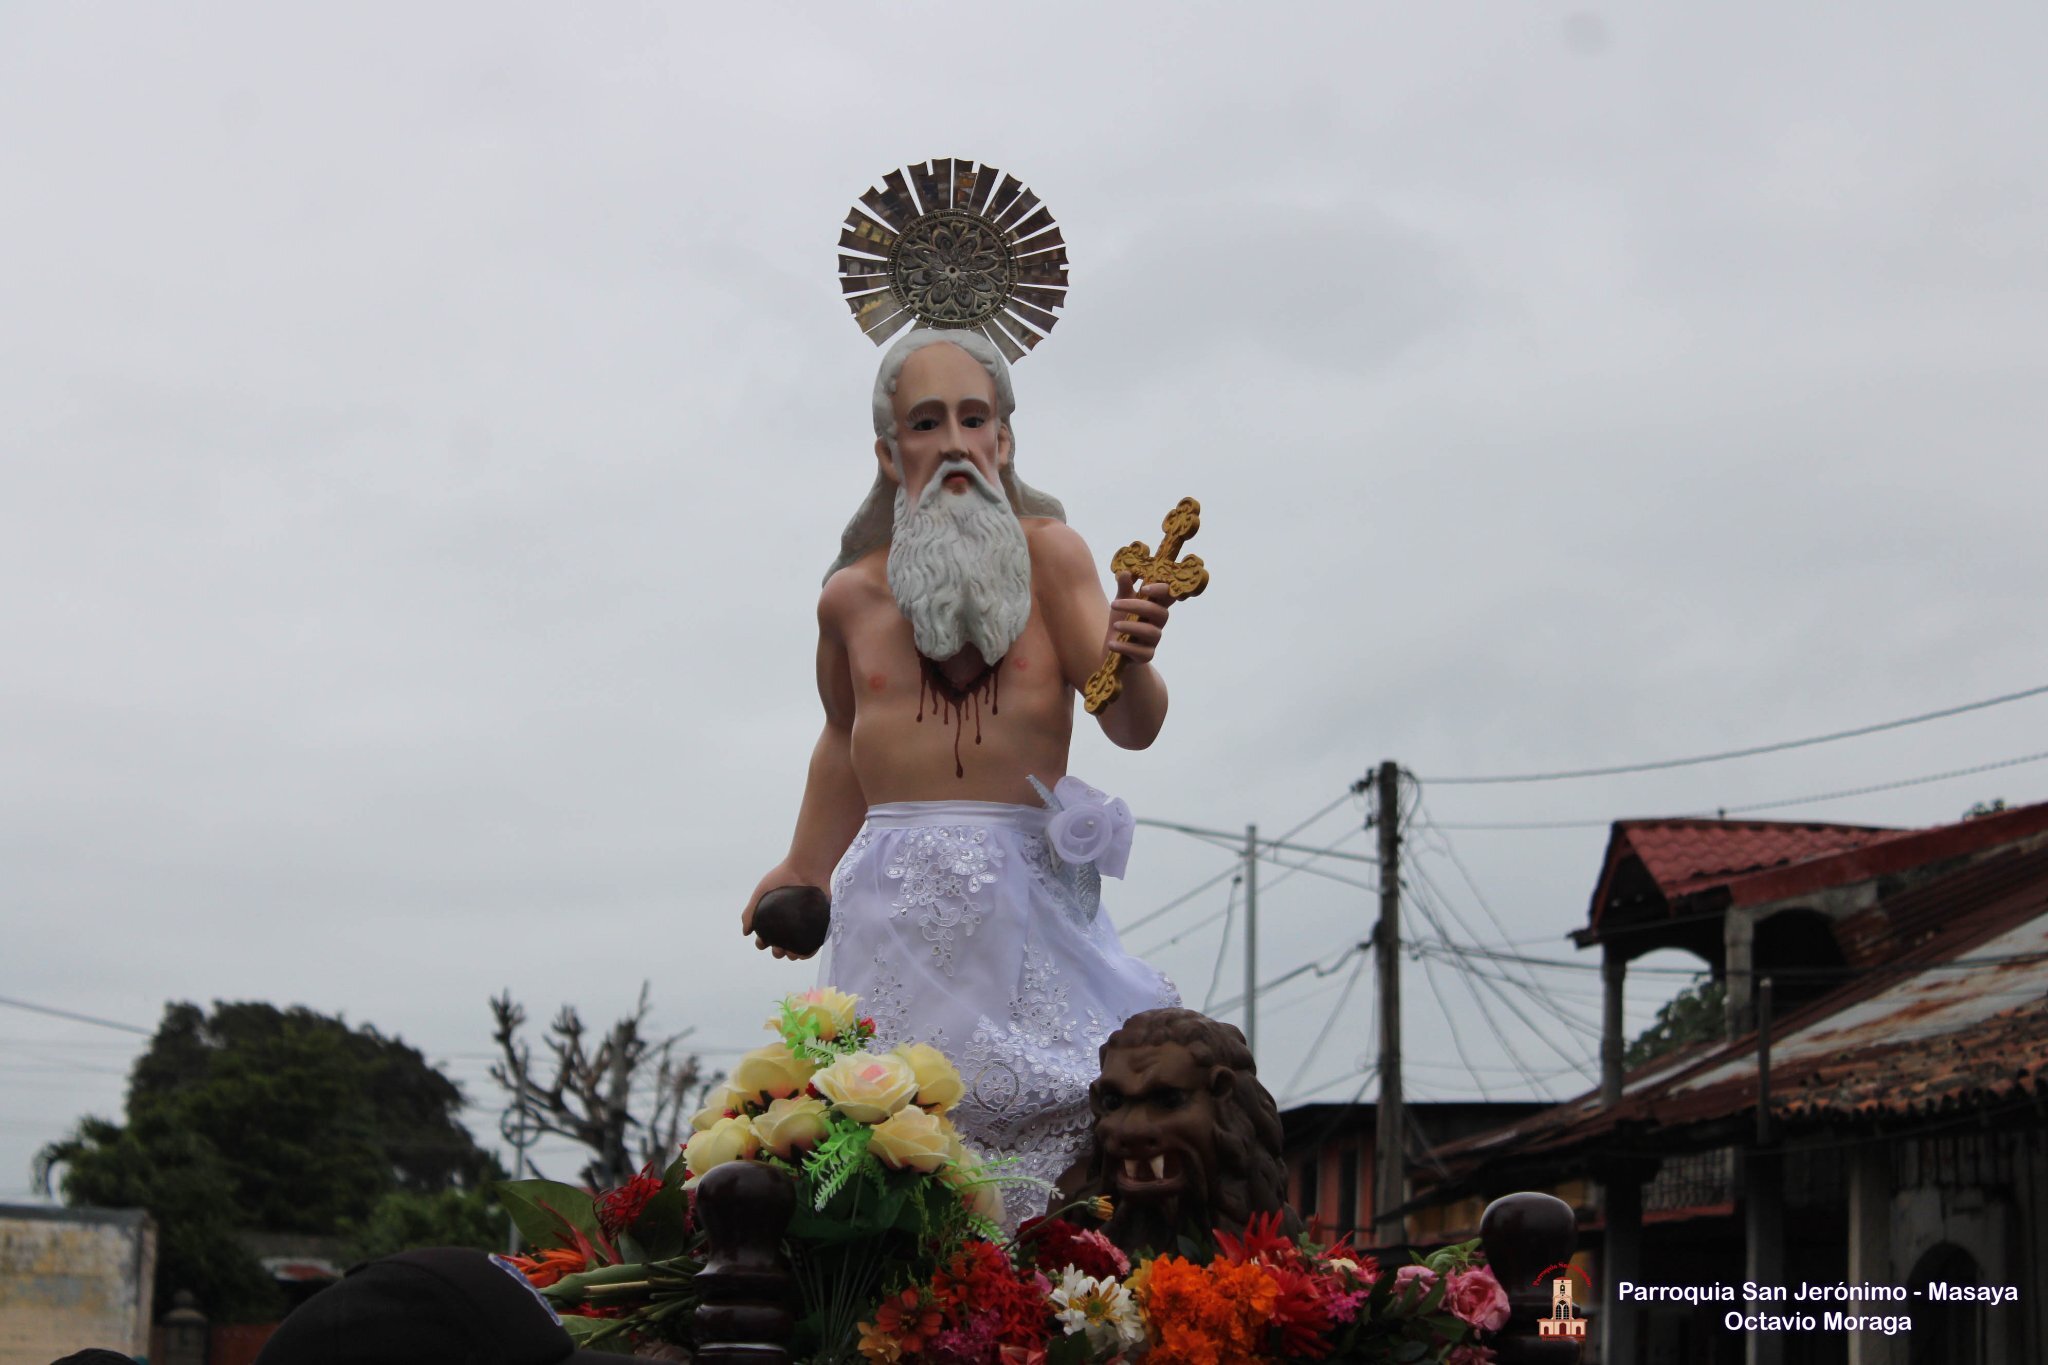 La de San Jerónimo, es una de las festividades más largas de Nicaragua, pues arrancan en septiembre y concluyen en diciembre.